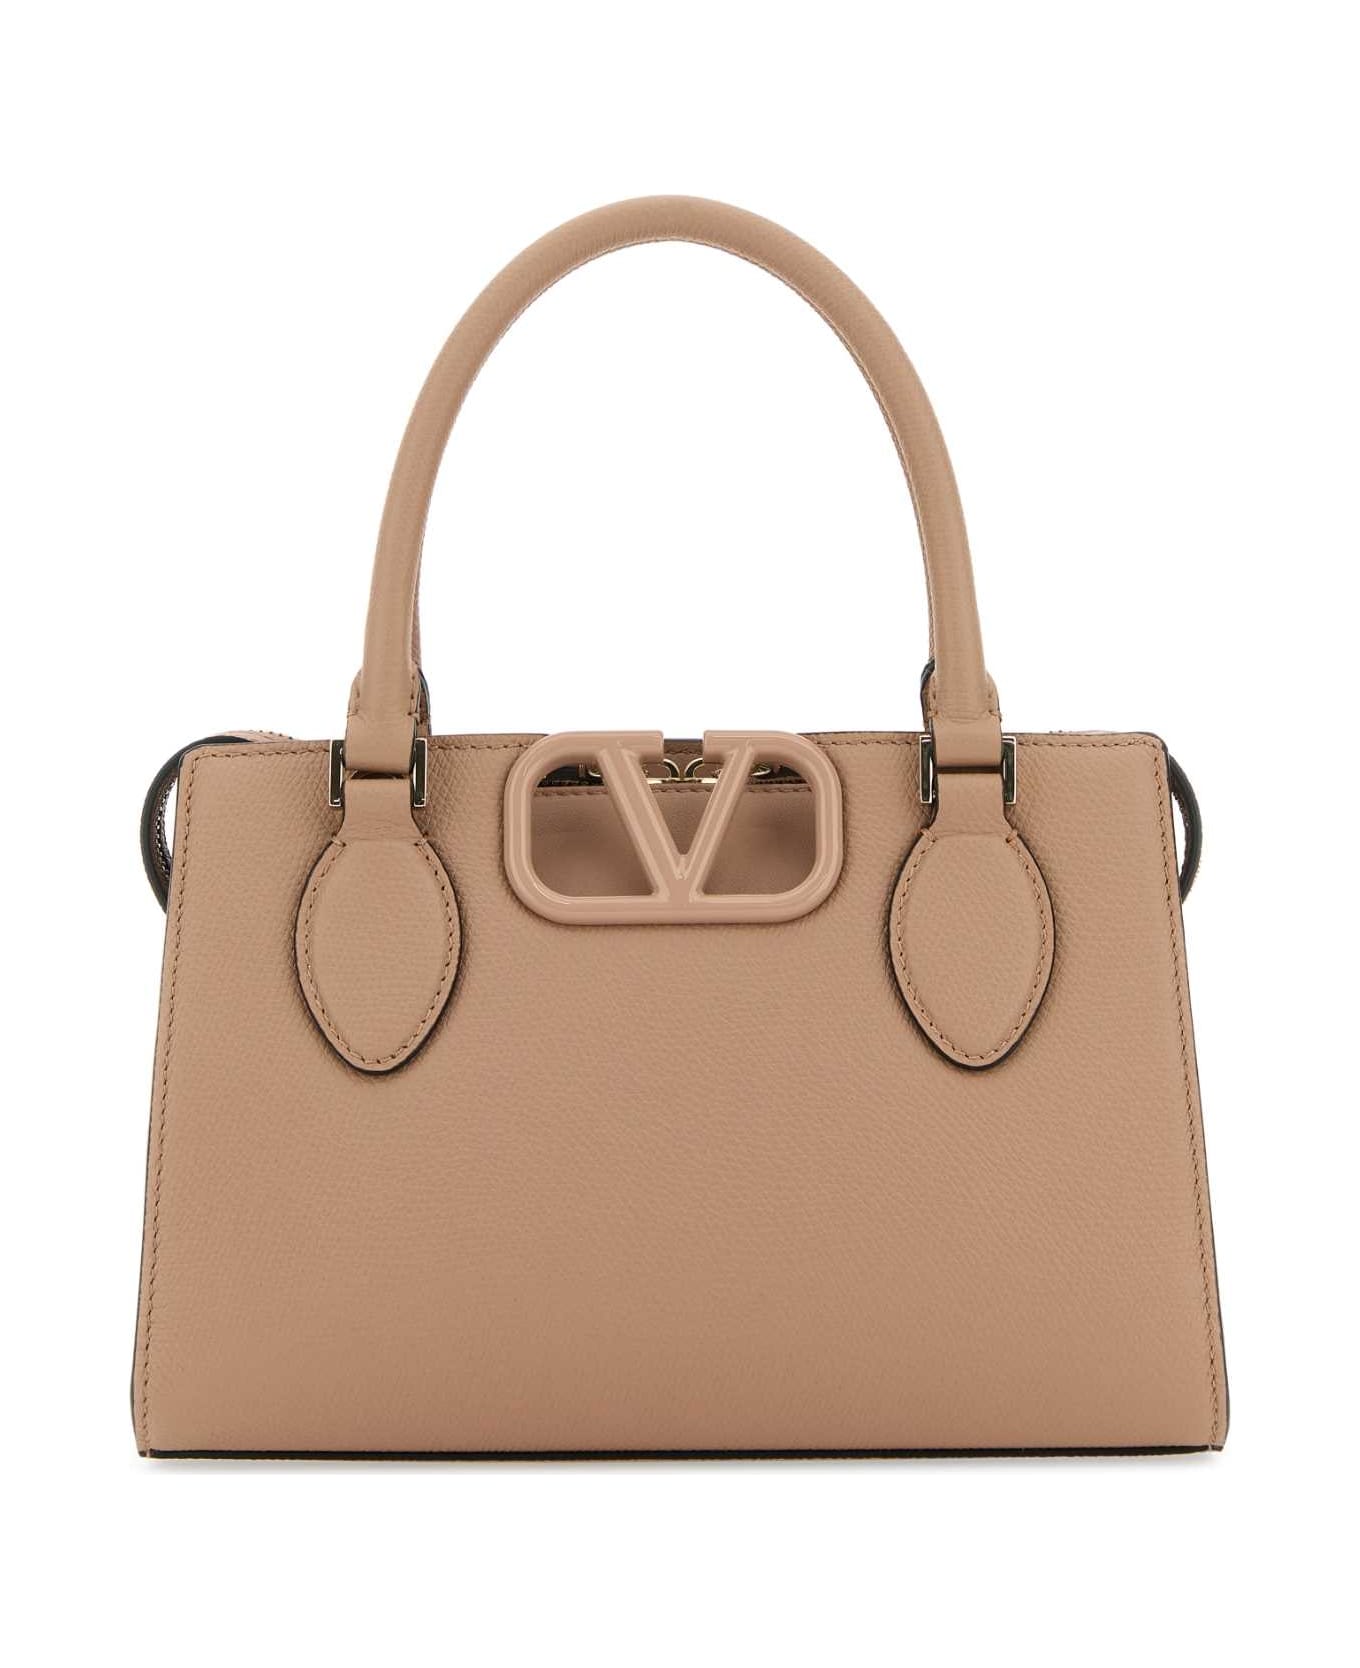 Valentino Garavani Antiqued Pink Leather Vlogo Handbag - ROSECANNELLE トートバッグ